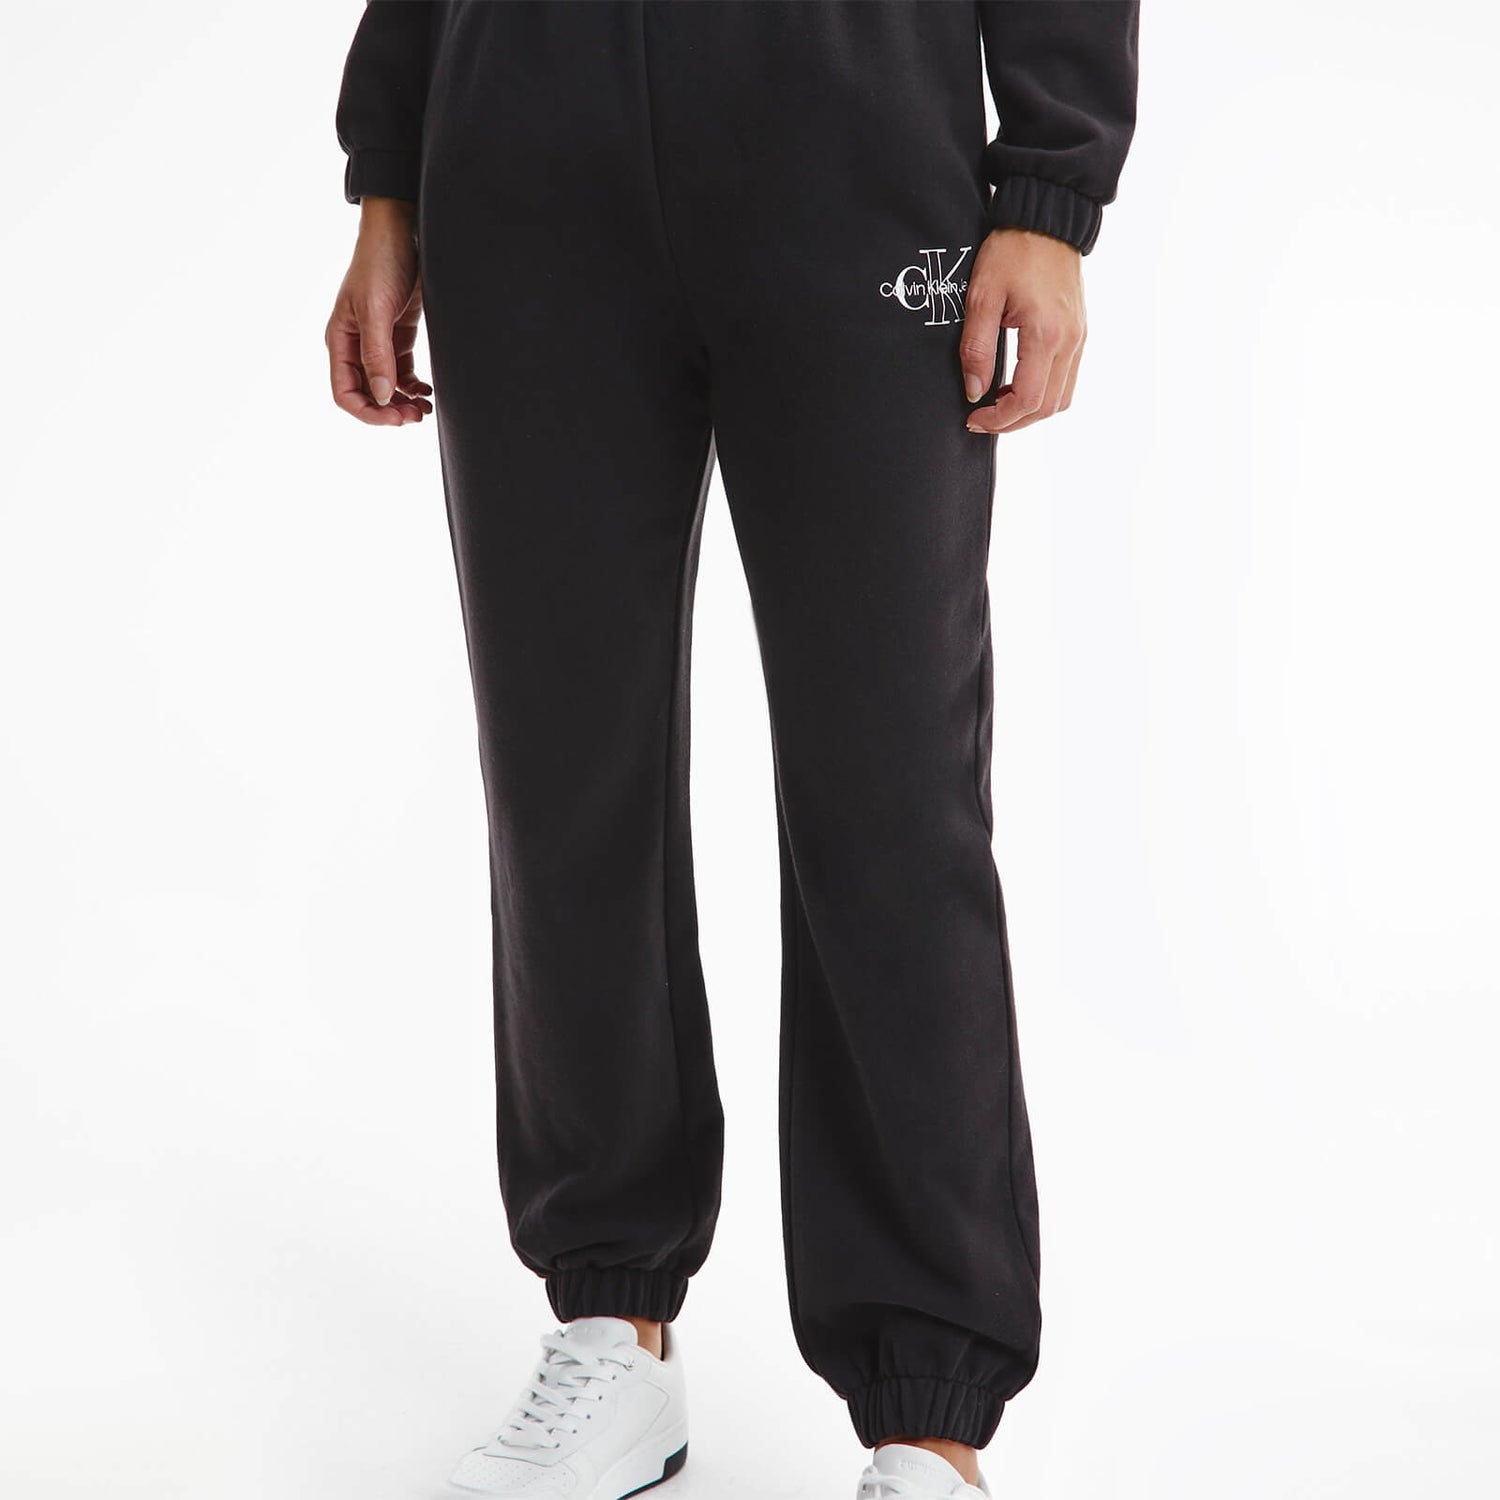 Calvin Klein Jeans Women's Two Tone Monogram Jog Pants - Ck Black - XS